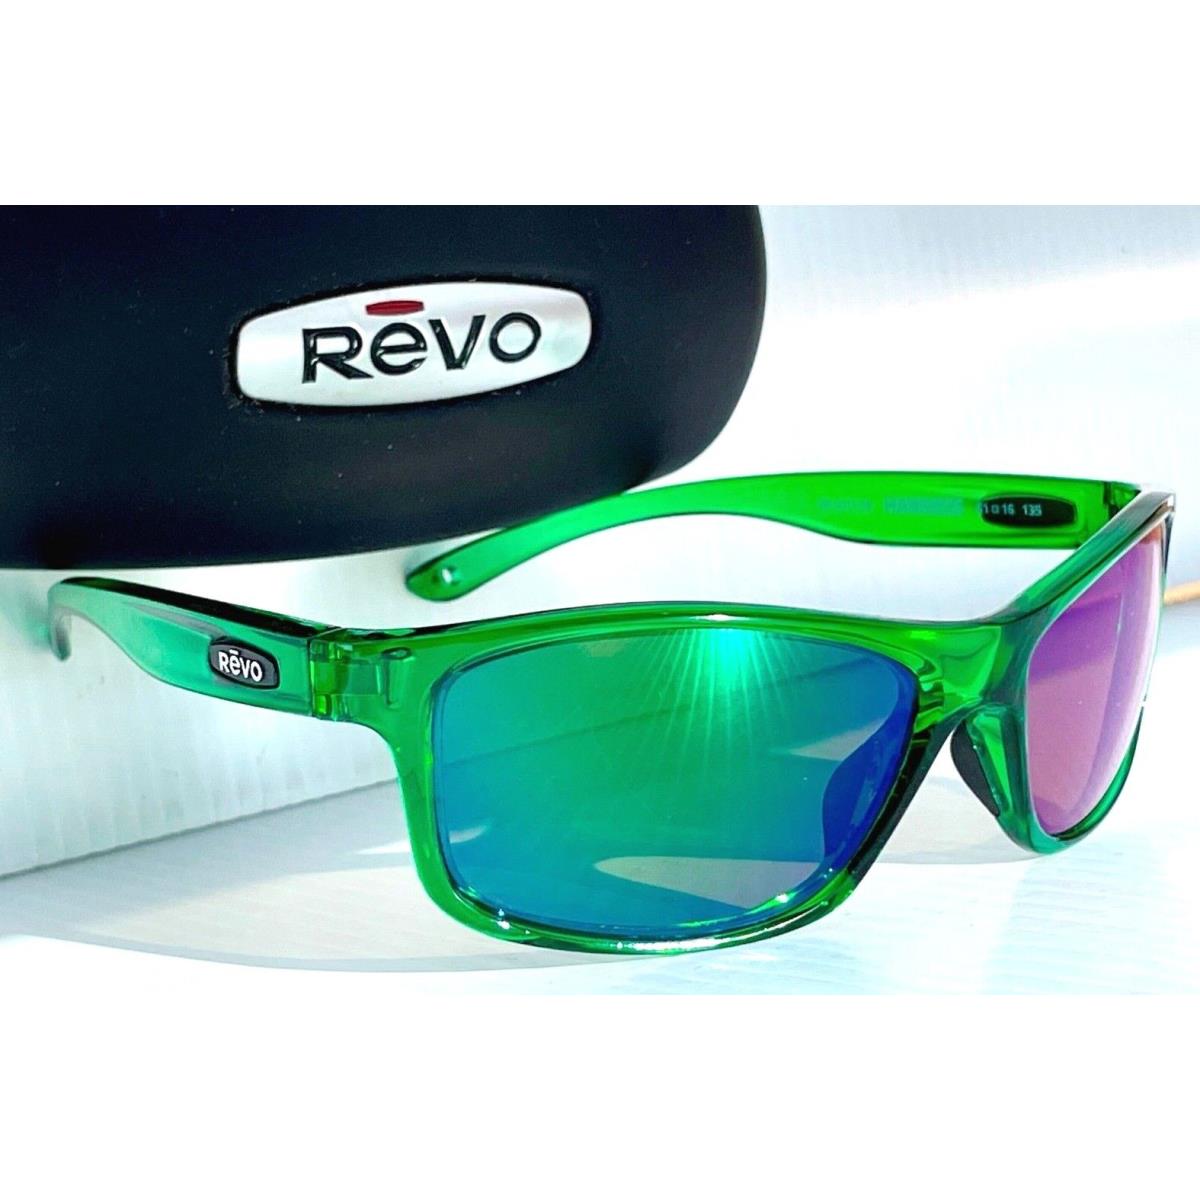 Revo sunglasses Harness - Green Frame, Green Lens 8